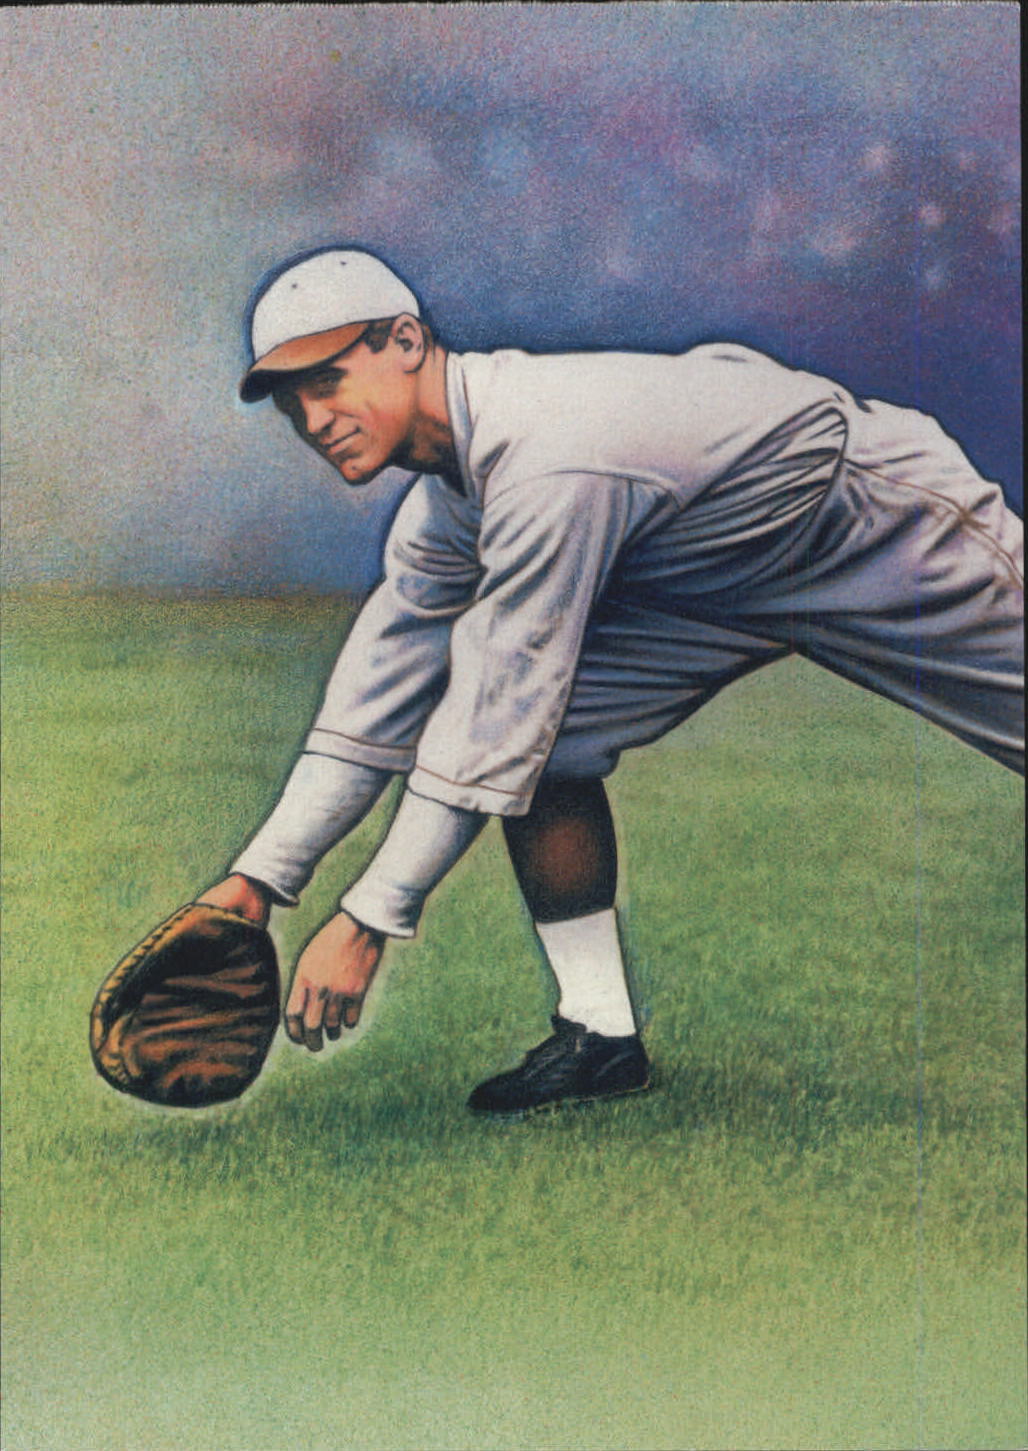 2000 USPS Legends of Baseball Postcards #16 George Sisler